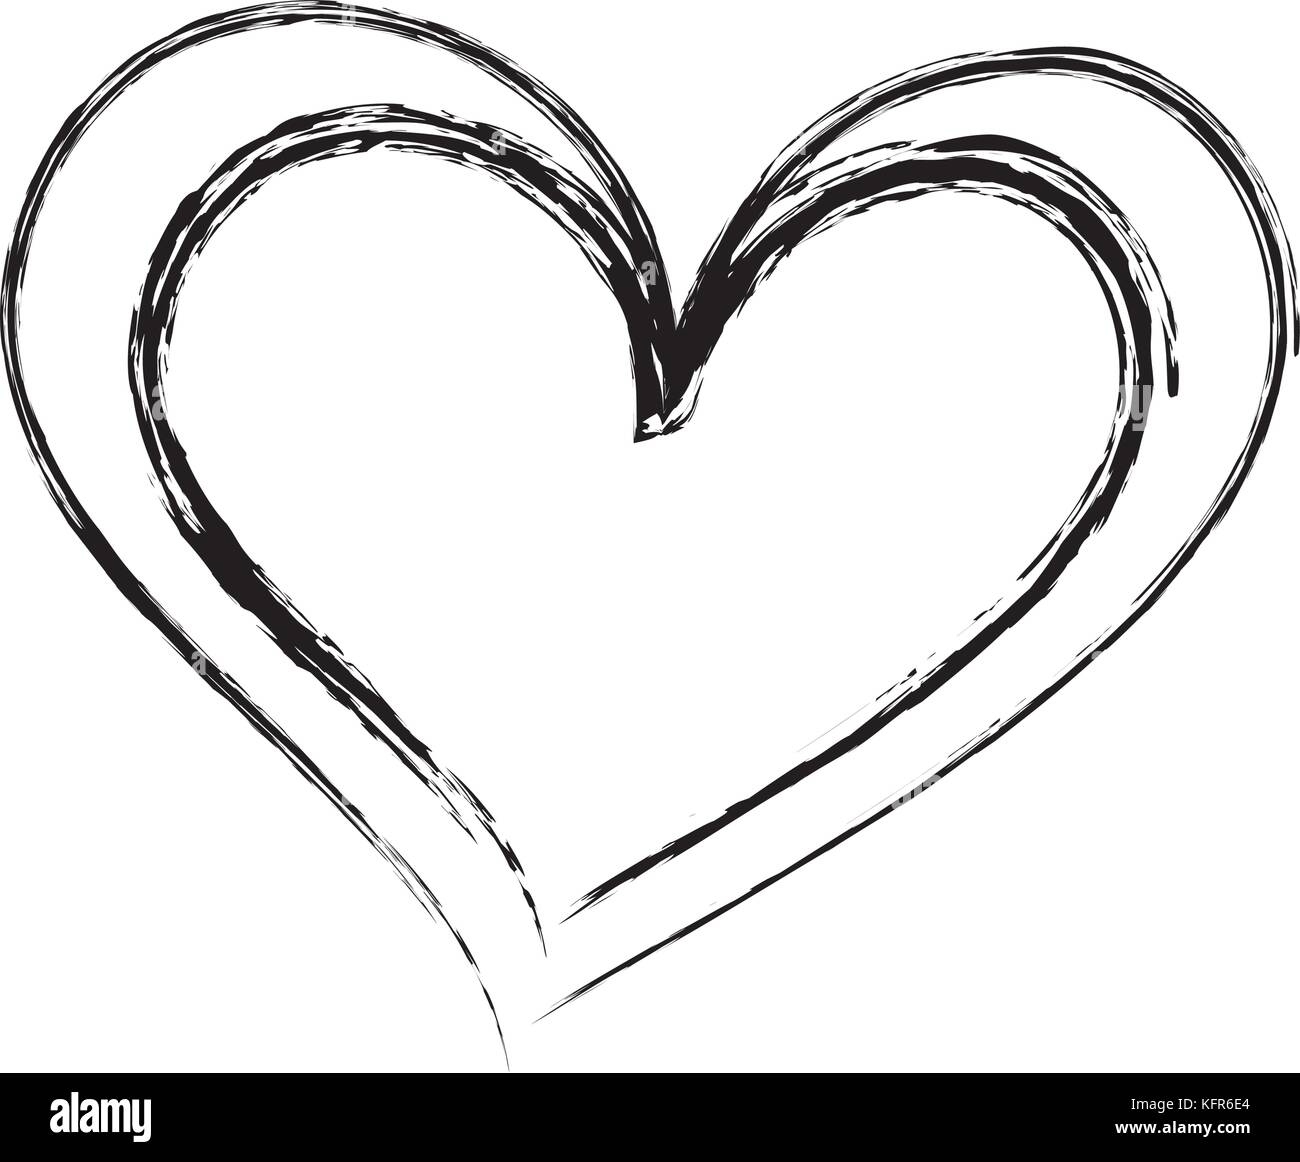 Dessin Pinceau Coeur Love Romance Passion Image Vectorielle Stock Alamy